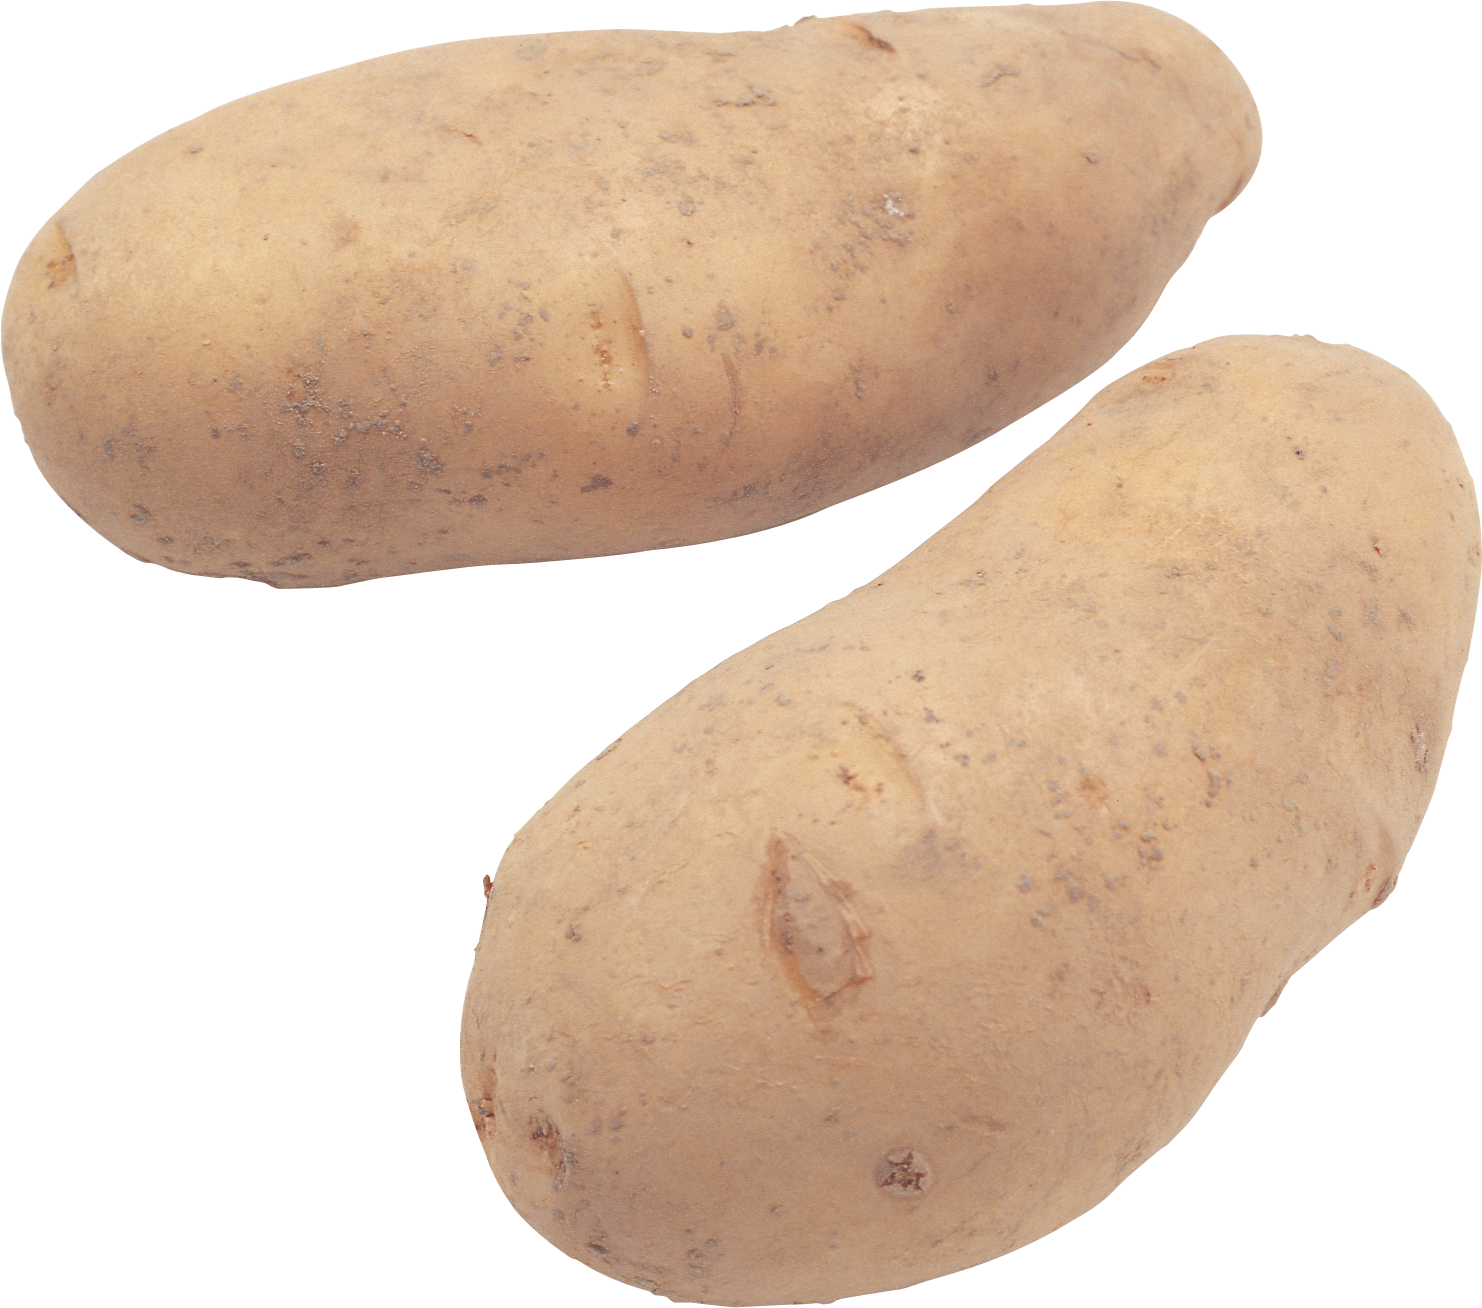 Potato root crop